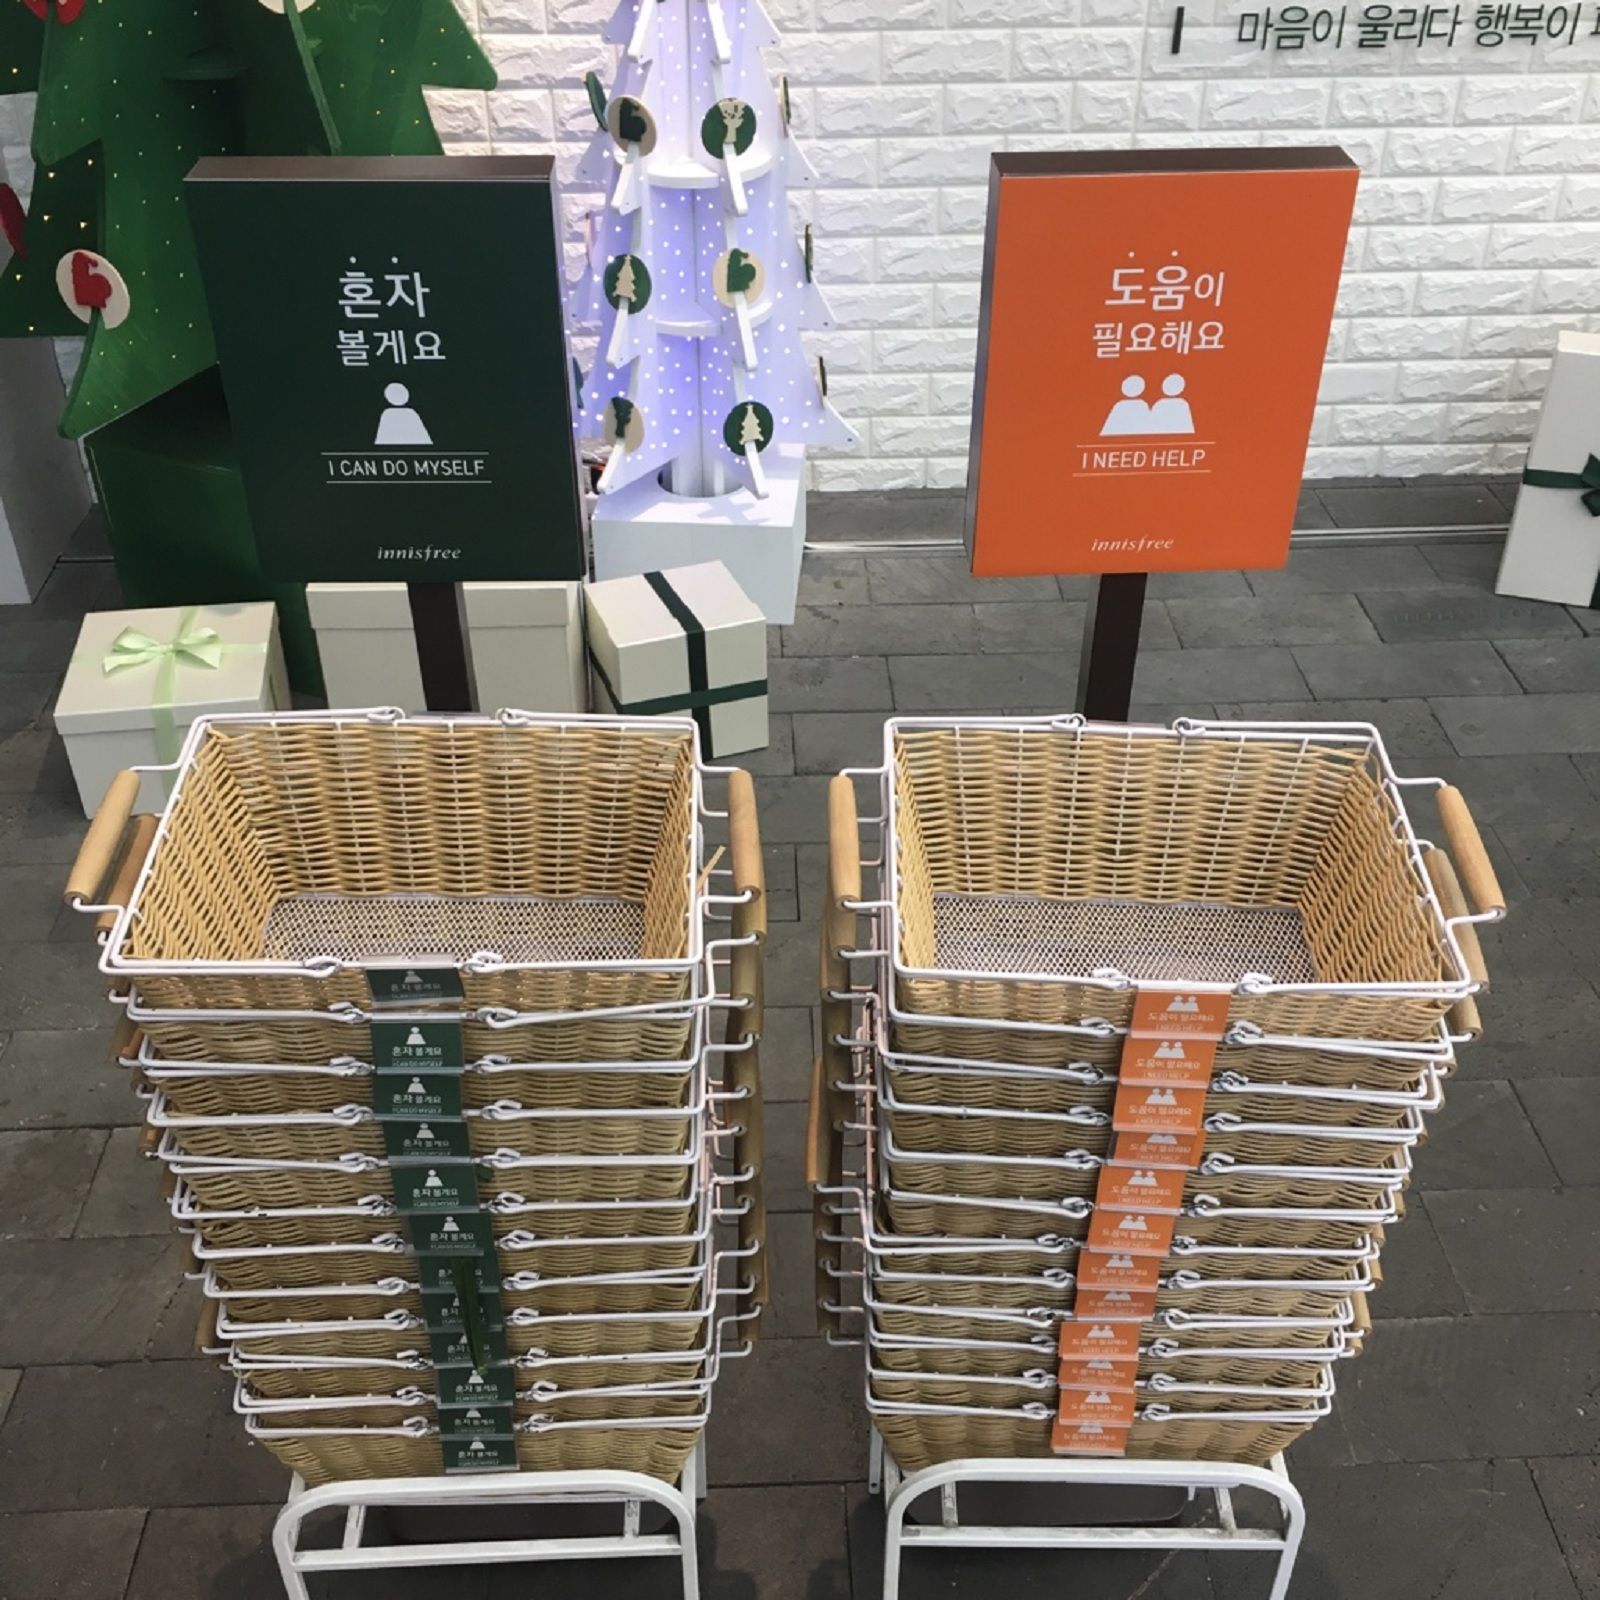 ideas bonitas de reciclaje canasta con rollos de papel higiénico/basket  with toilet paper rolls 